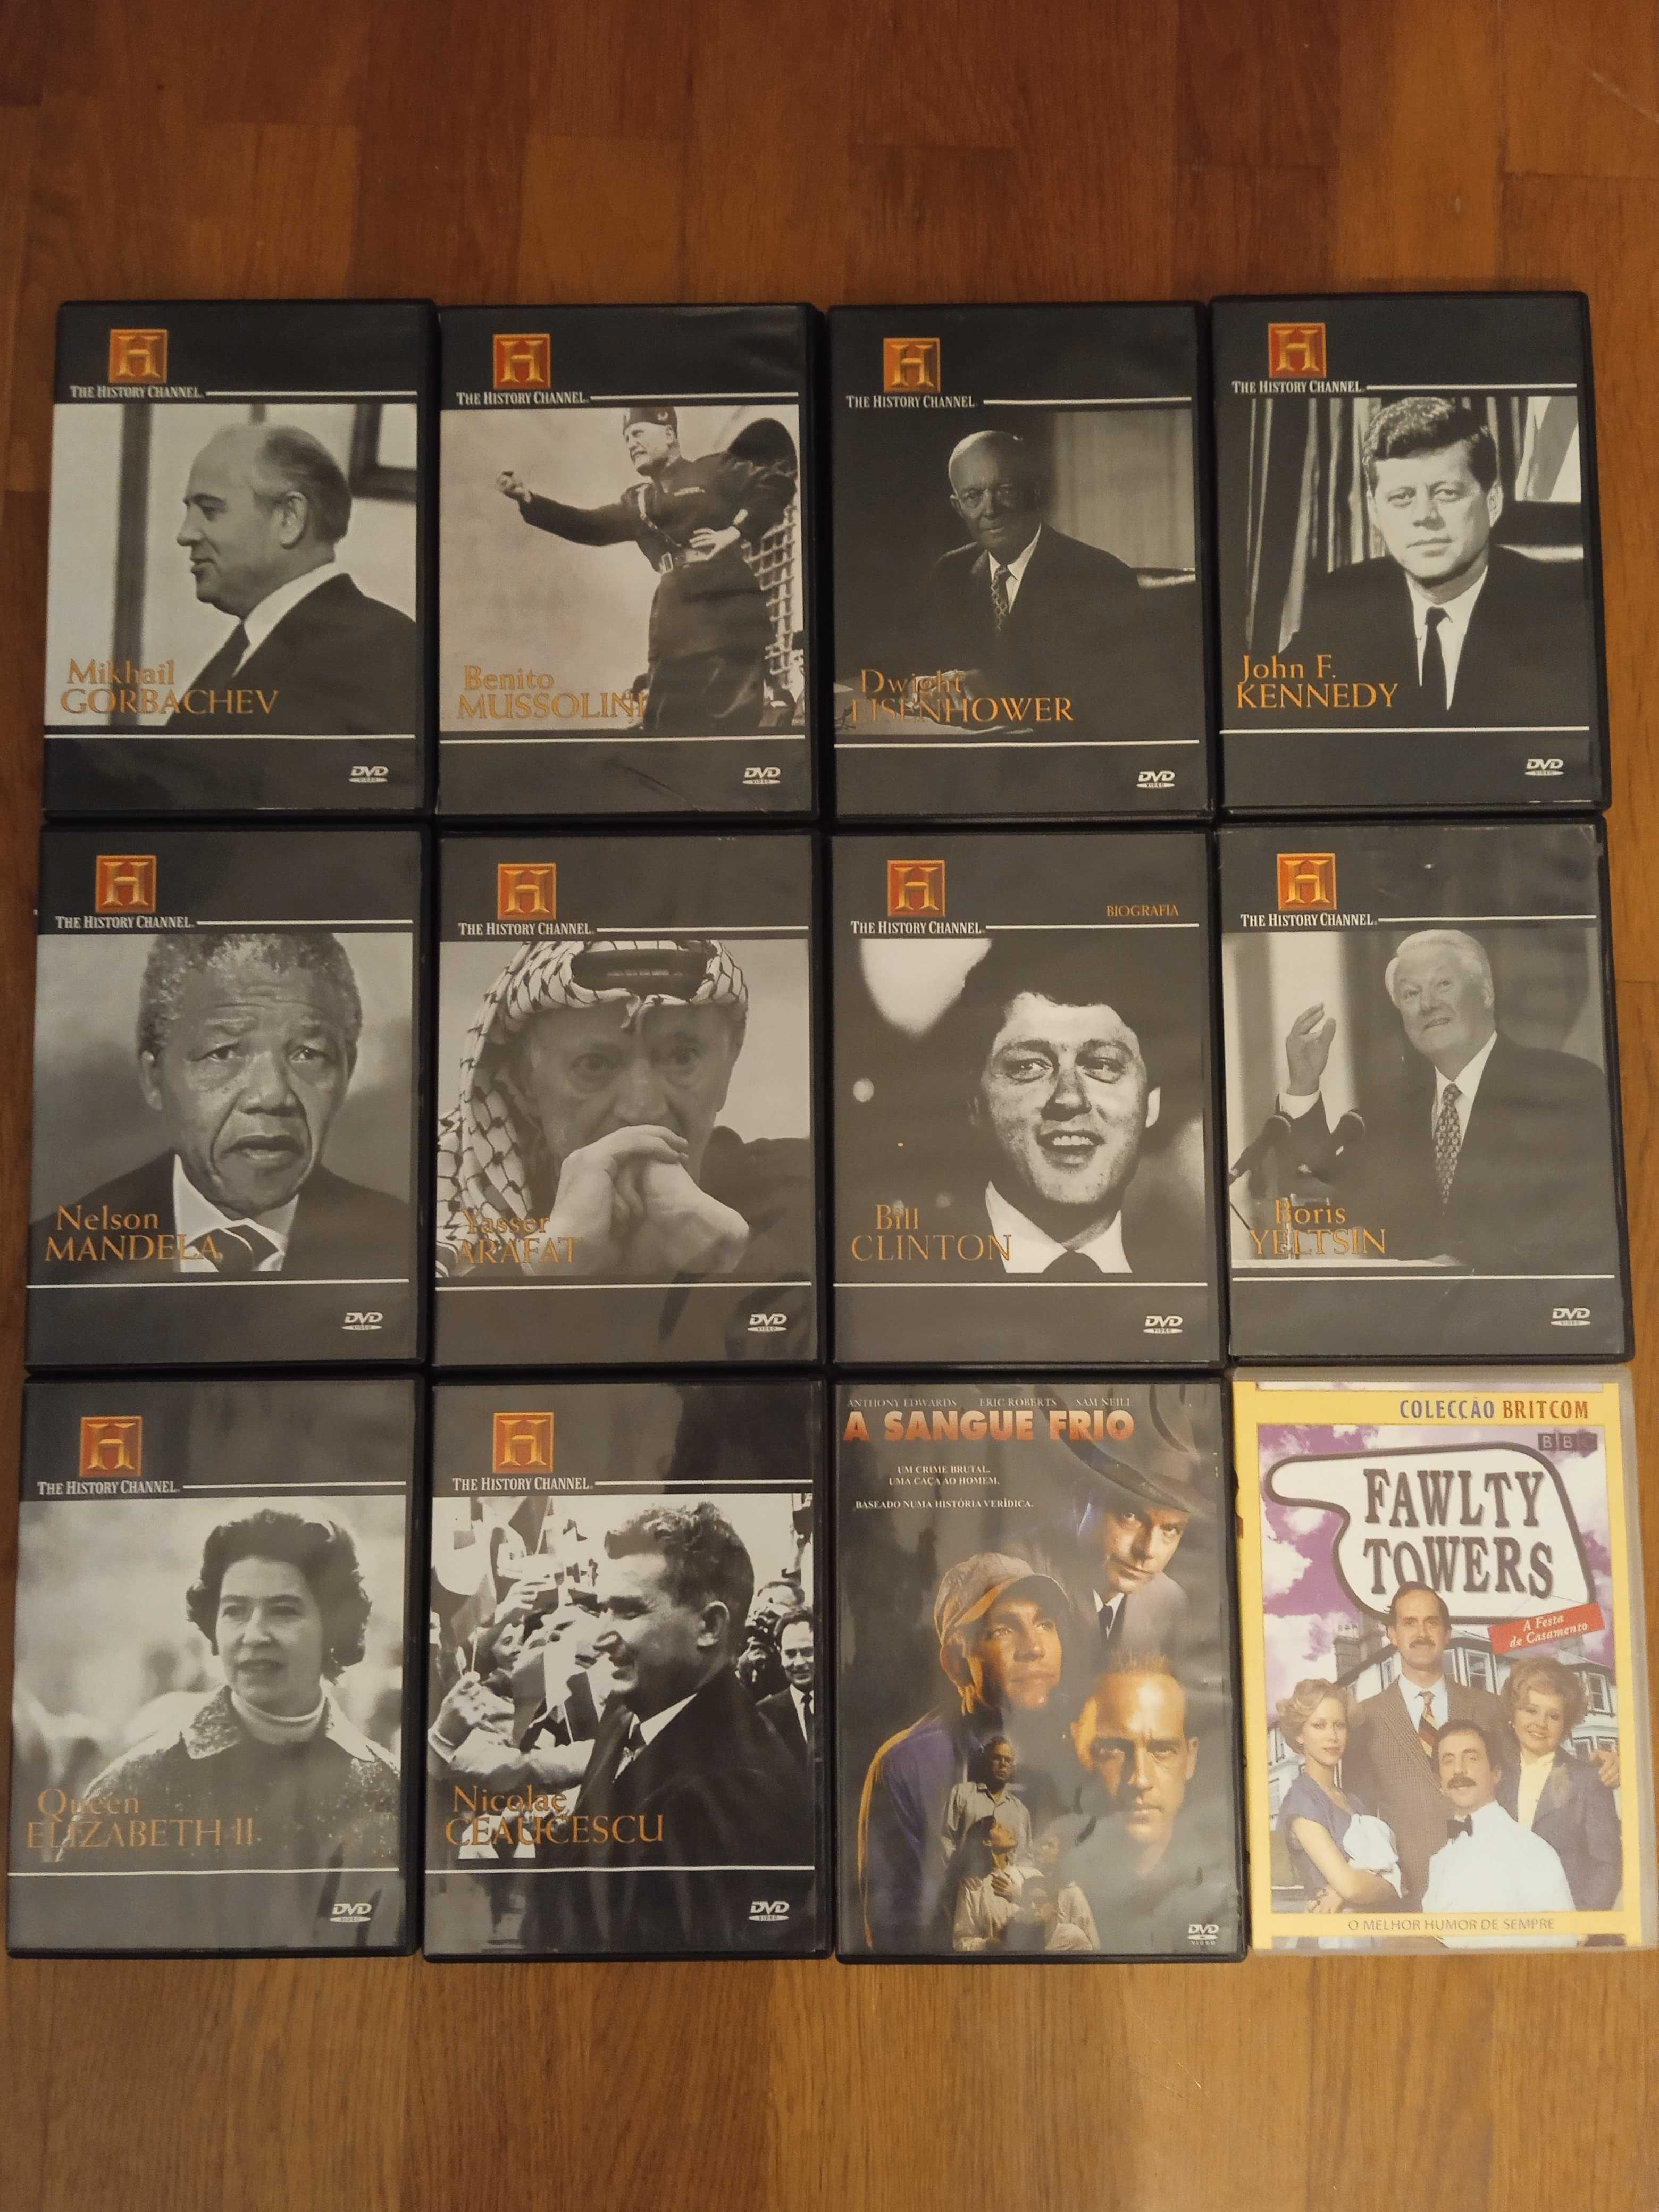 Colecção de DVD - Filmes Europeus incluídos